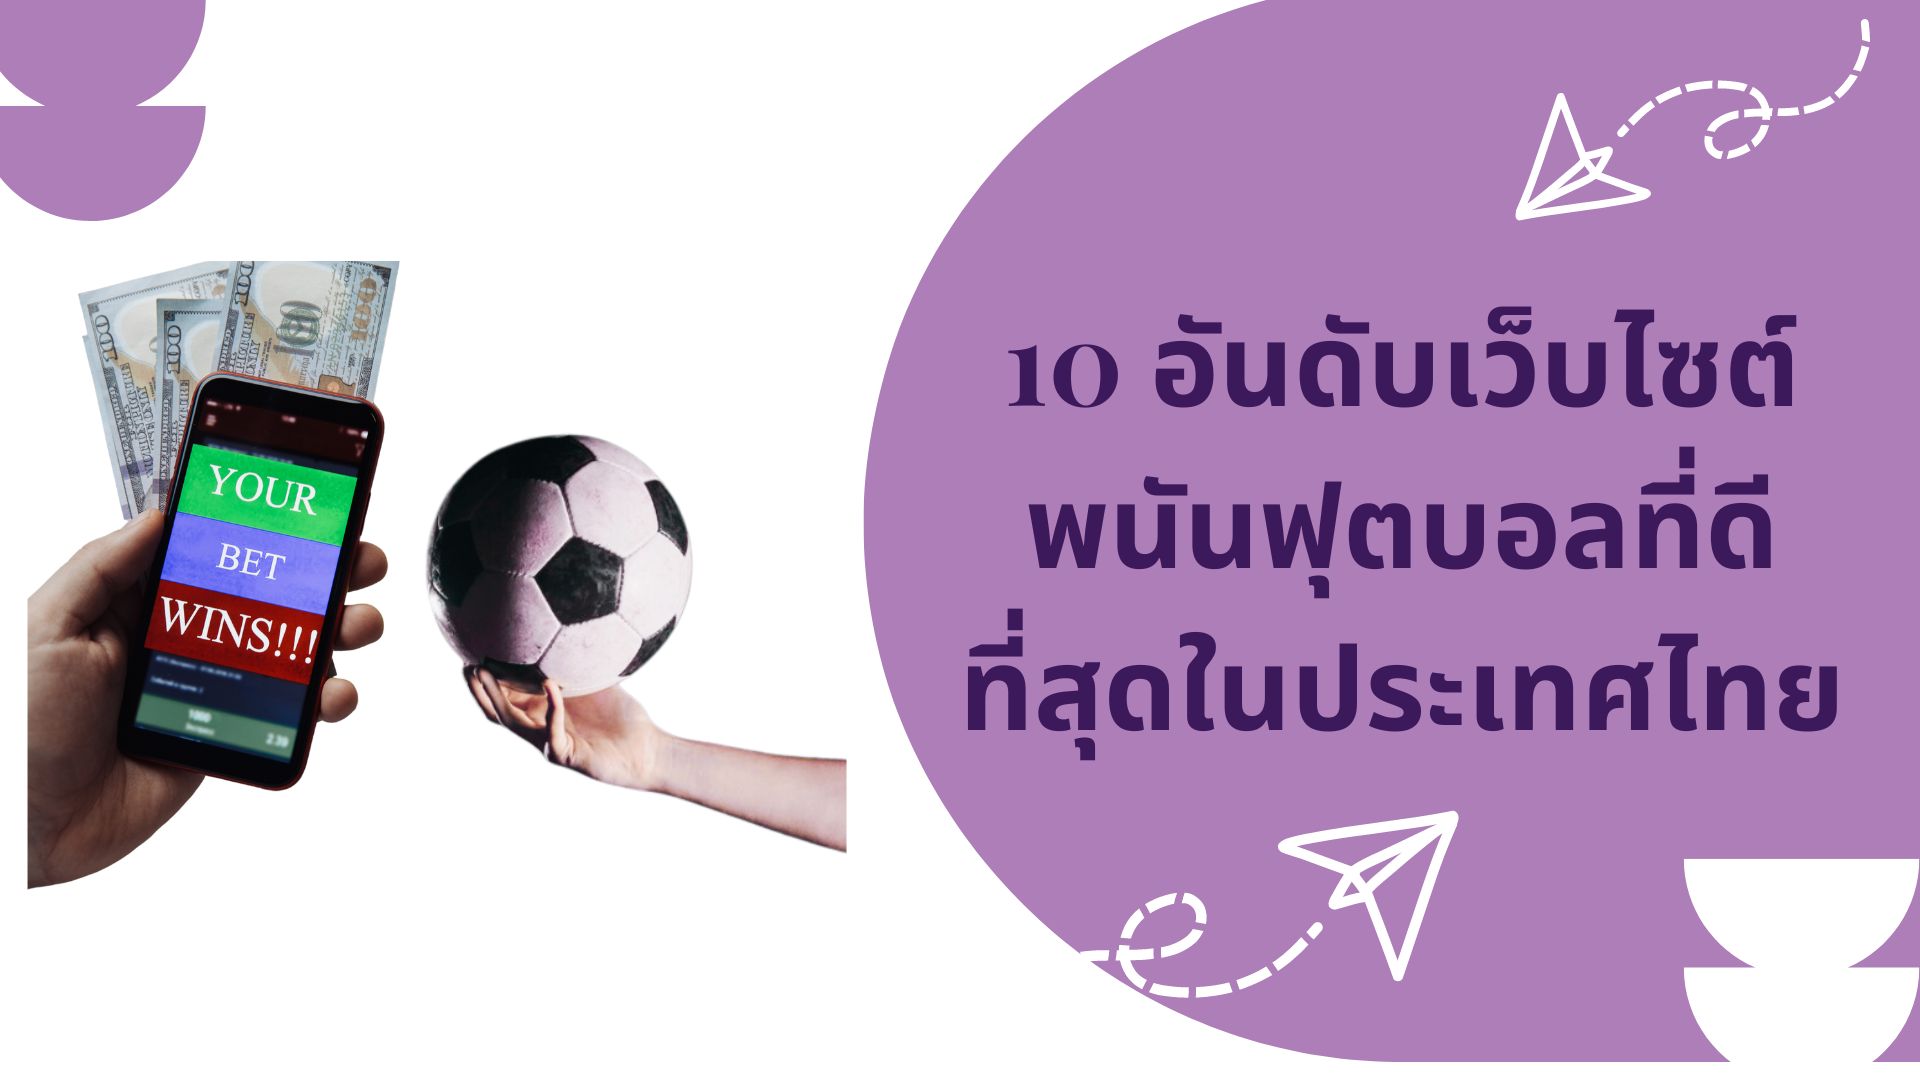 10 อันดับเว็บไซต์พนันฟุตบอลที่ดีที่สุดในประเทศไทย